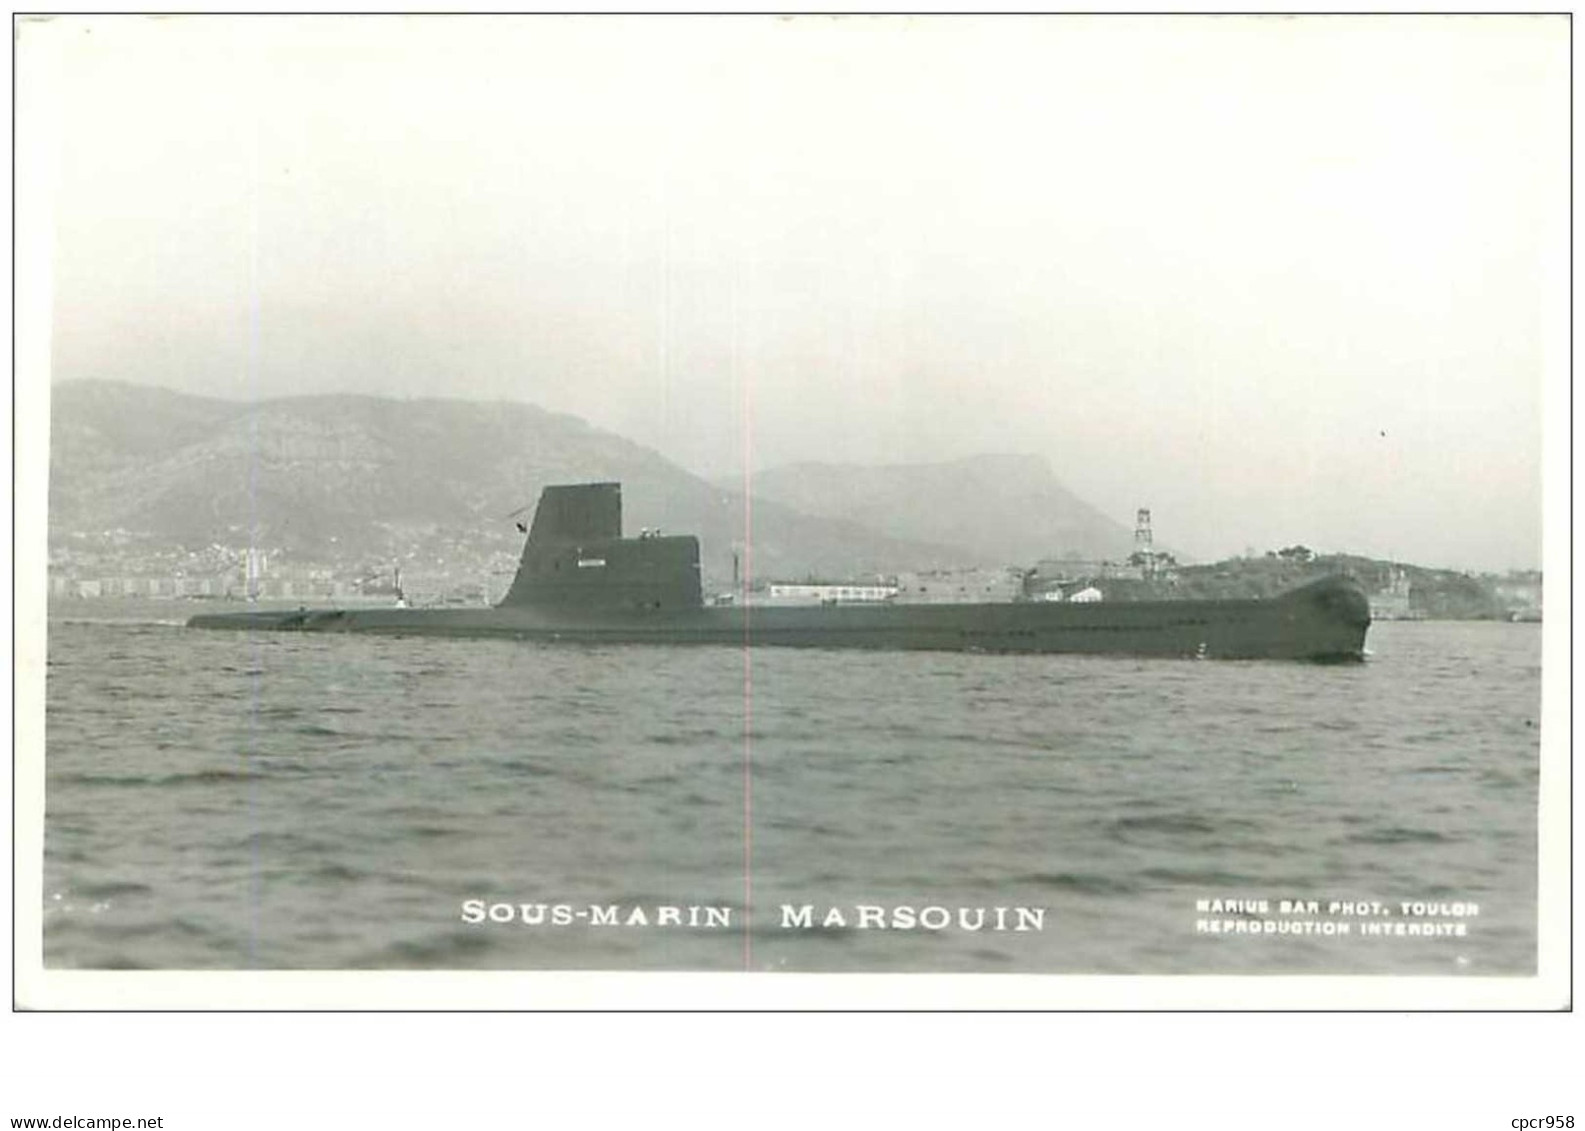 SOUS-MARINS.n°24851.PHOTO DE MARIUS BAR.MARSOUIN - Submarinos